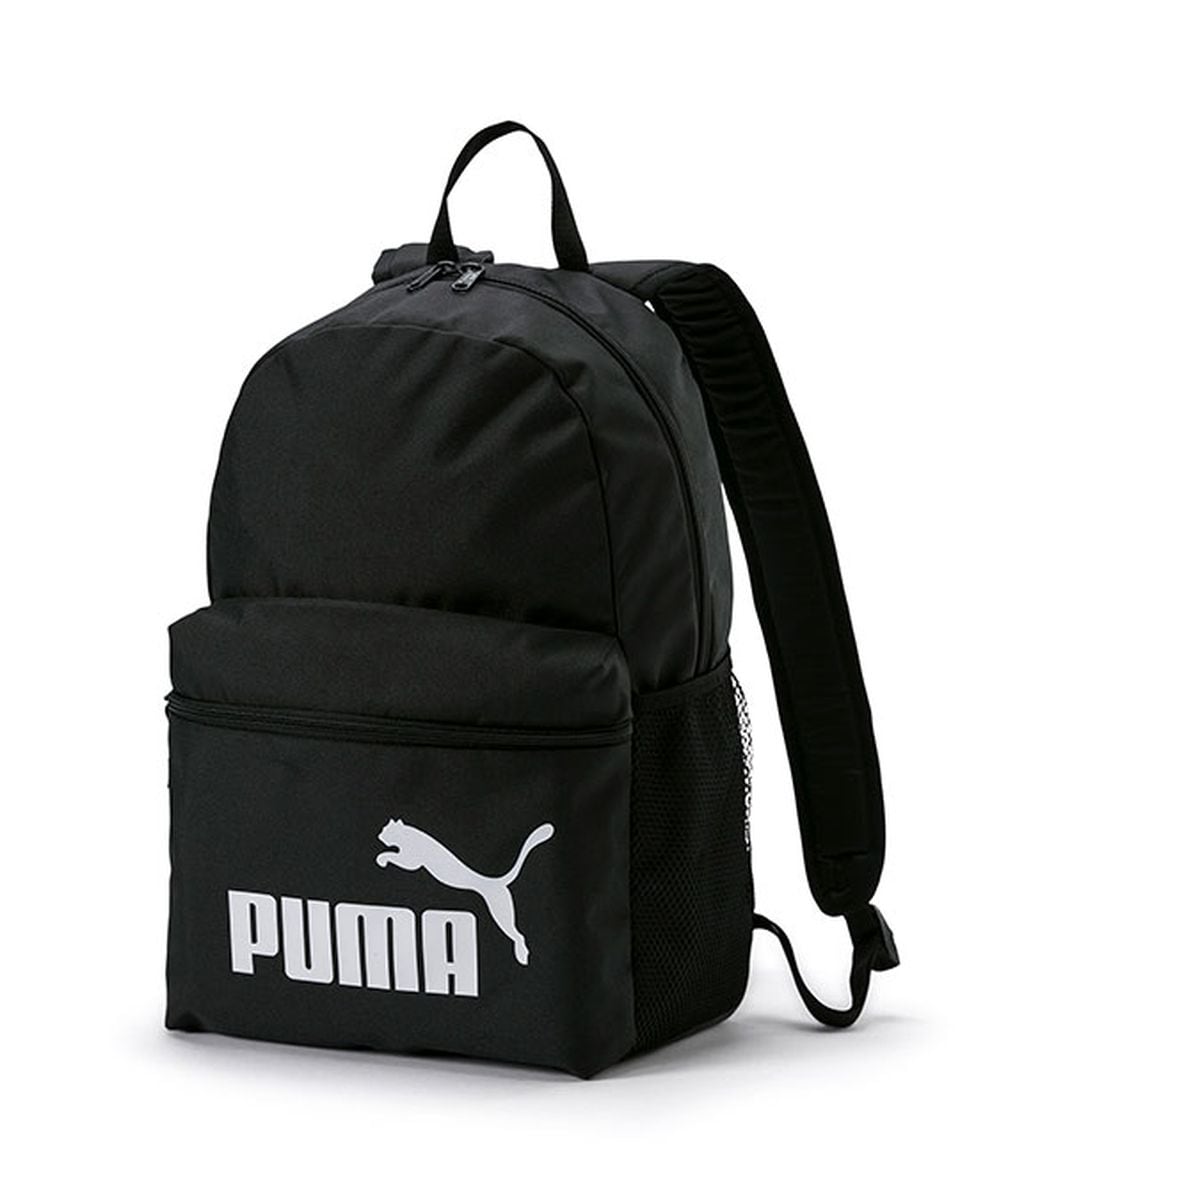 Encontramos una mochila Puma con 20.000 valoraciones que combina